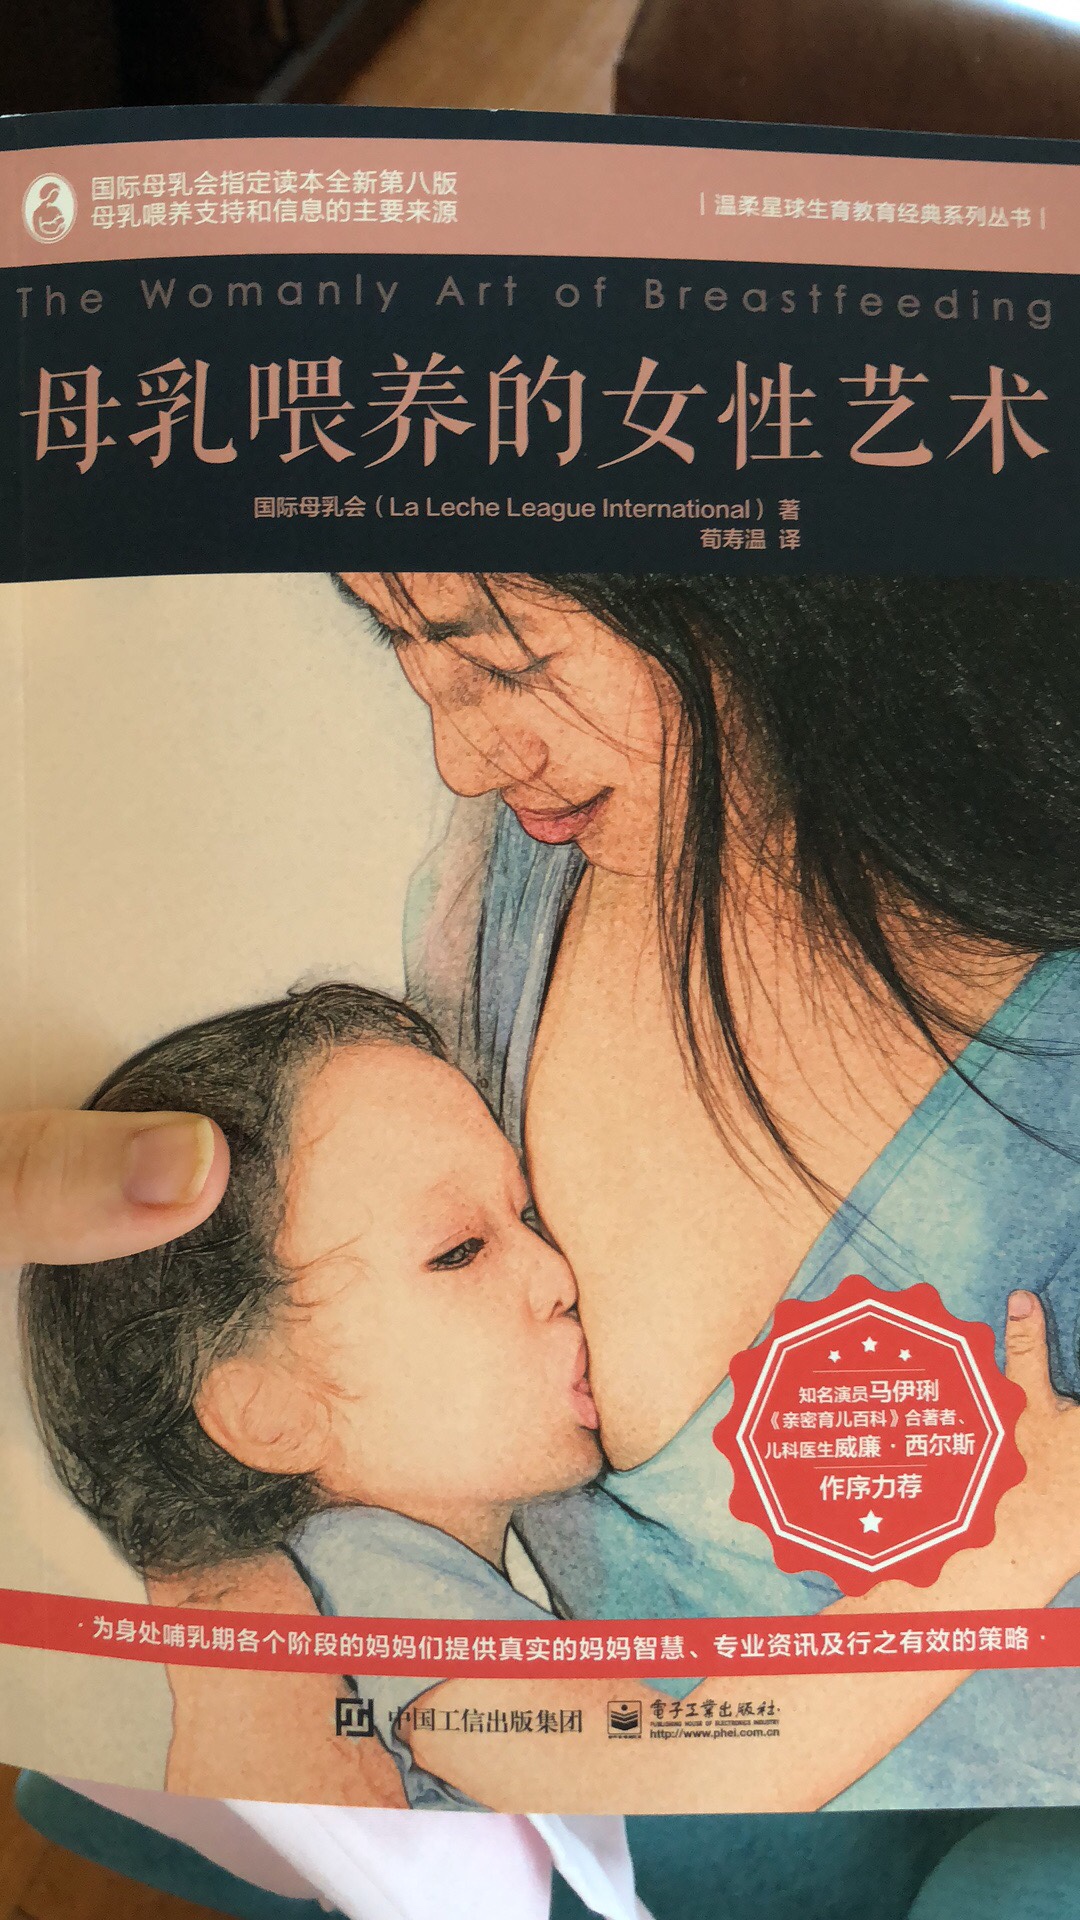 ～是本不错的书～希望本地母乳顾问能多一些帮助更多人适合新手妈妈 在很多方面给予答疑解惑和精神支撑